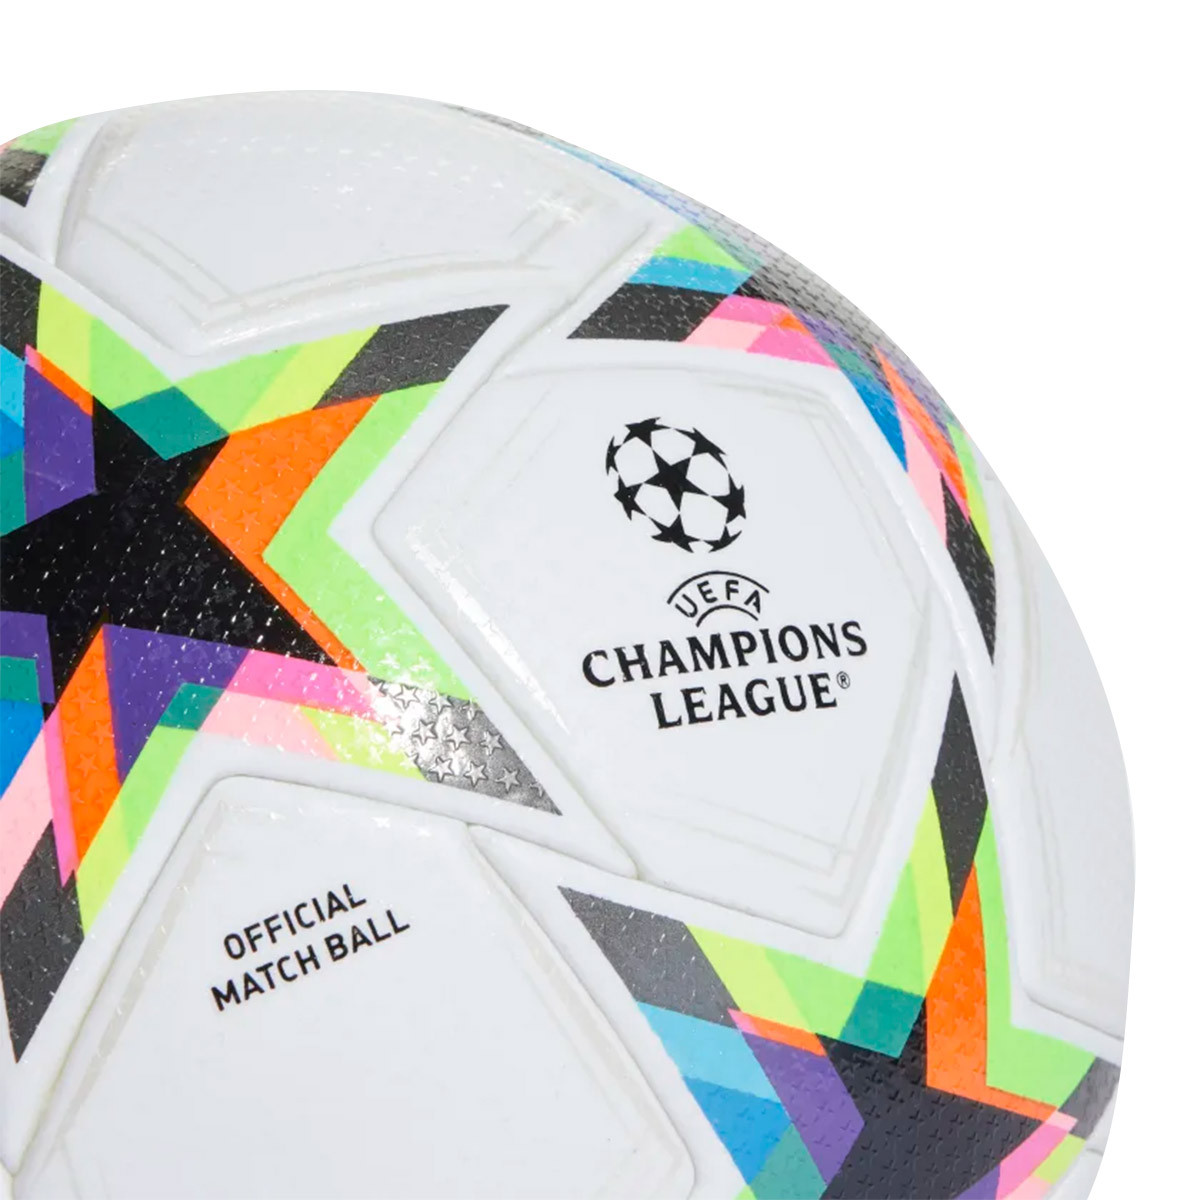 adidas Ballon Champions League Finale 2022 League - Blanc/Bleu/Jaune